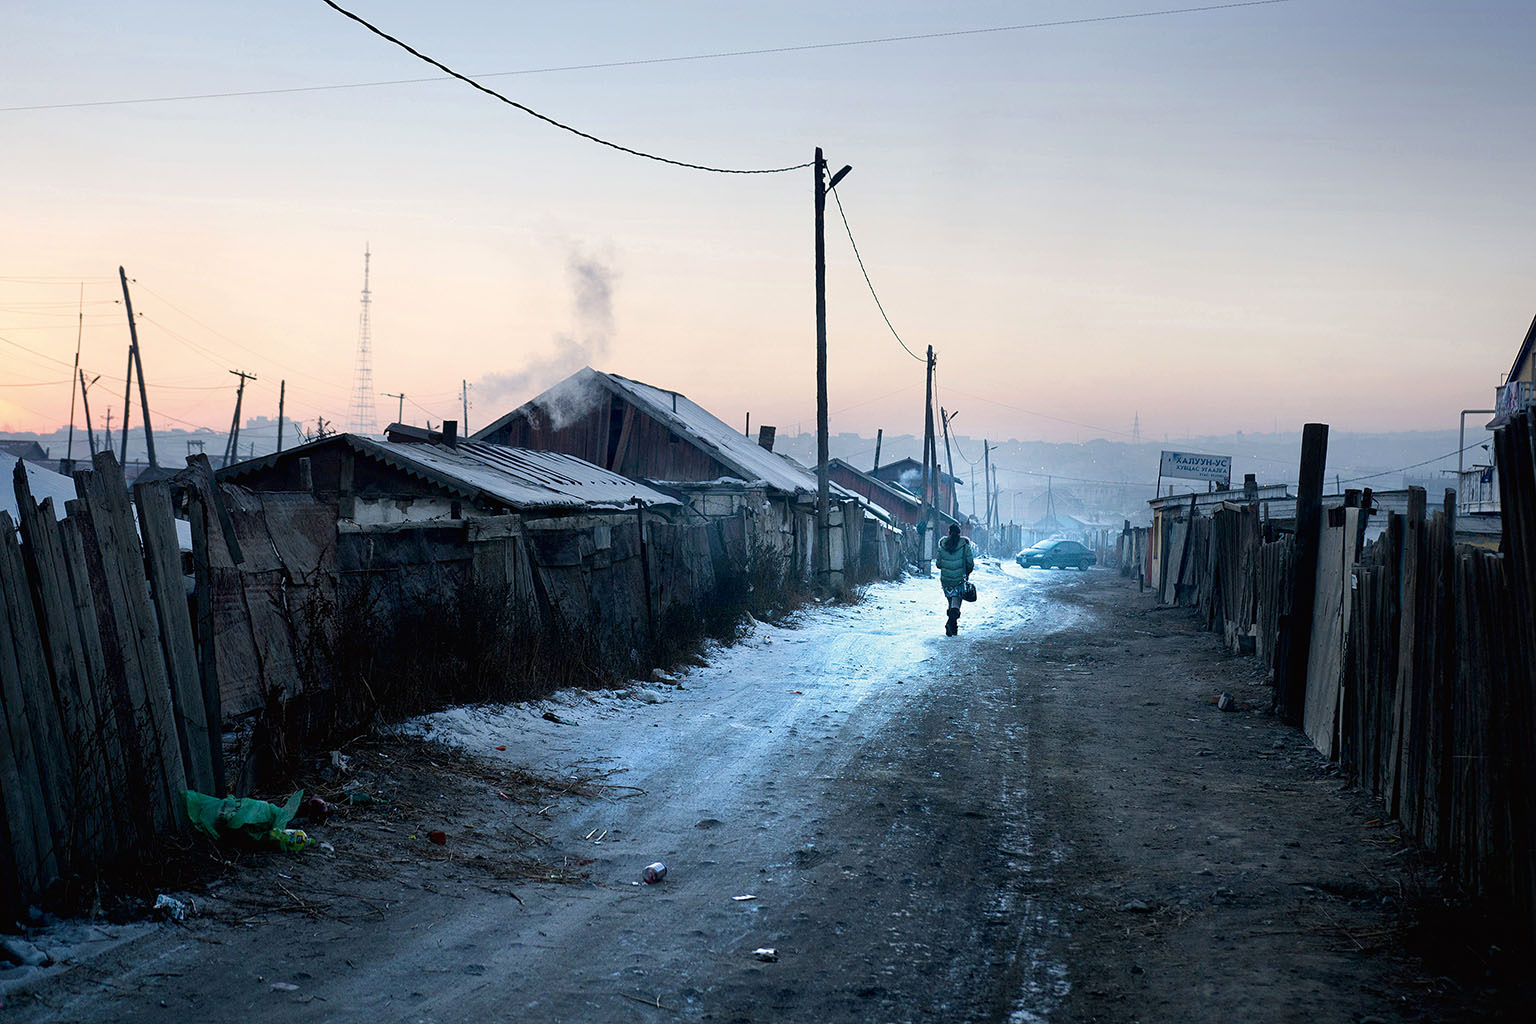 Jurtové čtvrti. Kdysi tvořily Ulánbátar výhradně jurty. S rostoucí migrací do města a s nástupem moderní konzumní společnosti se však jurtoviště proměnila ve slumy.